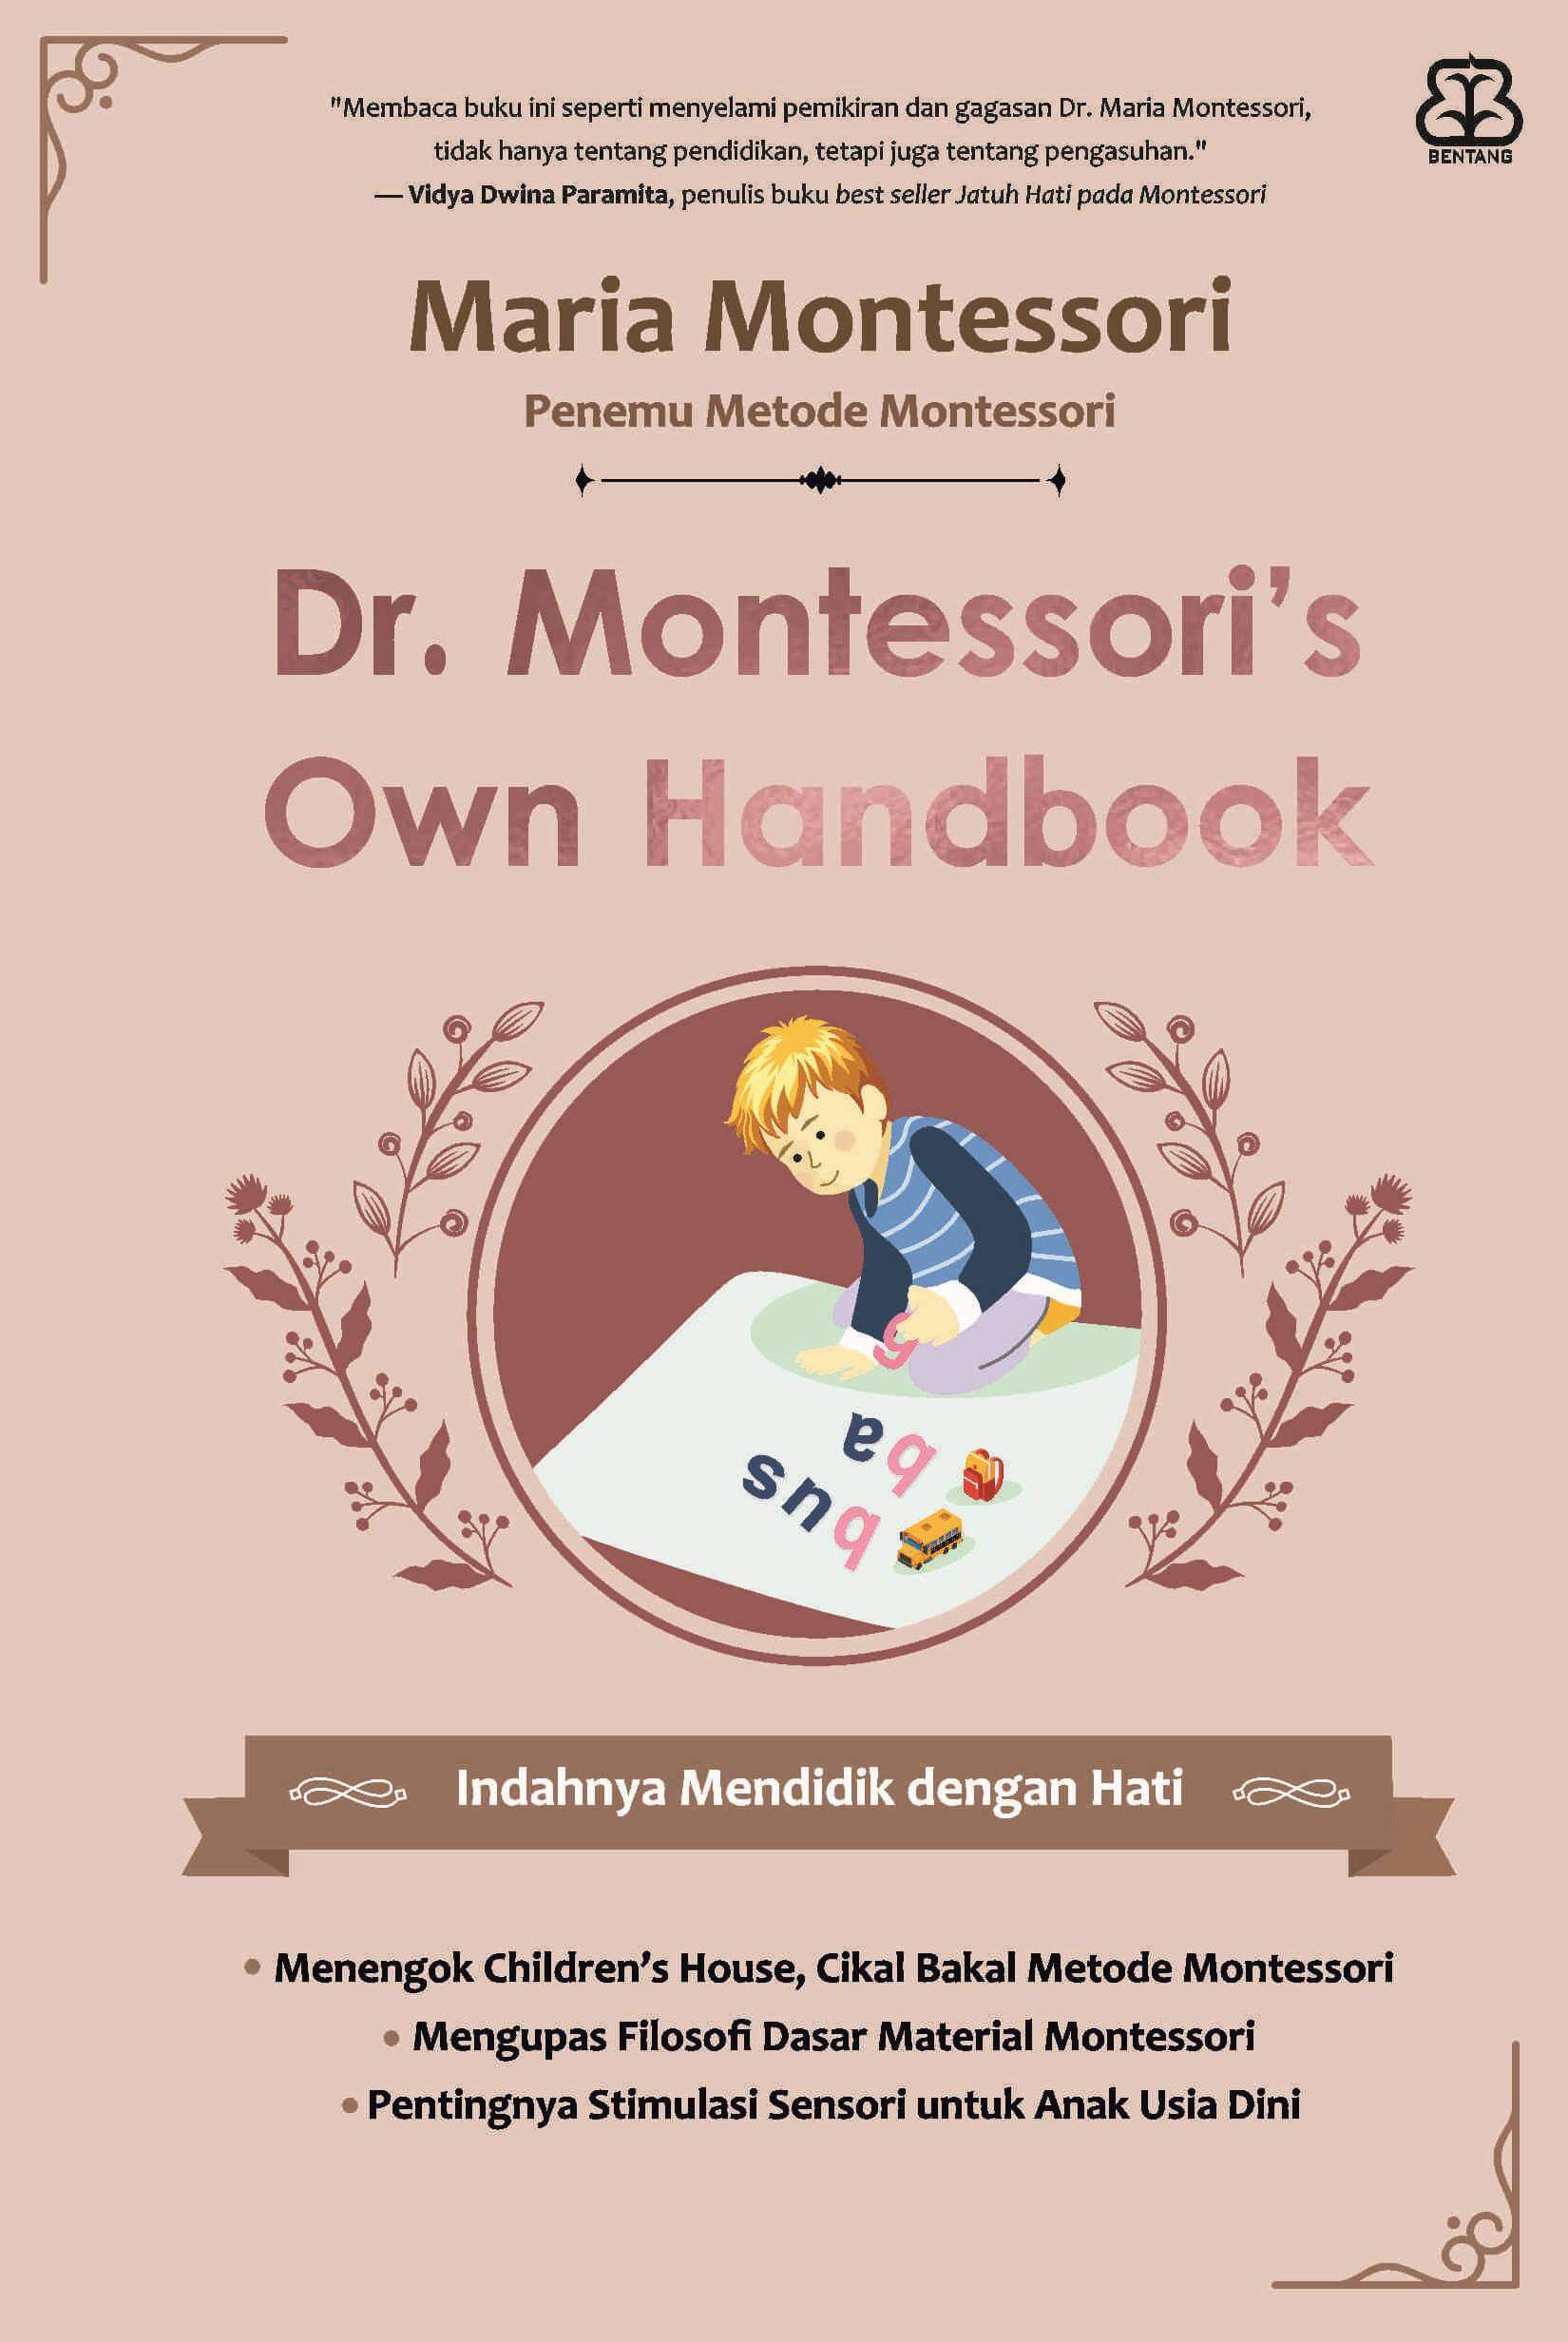 Dr. Montessori's own handbook